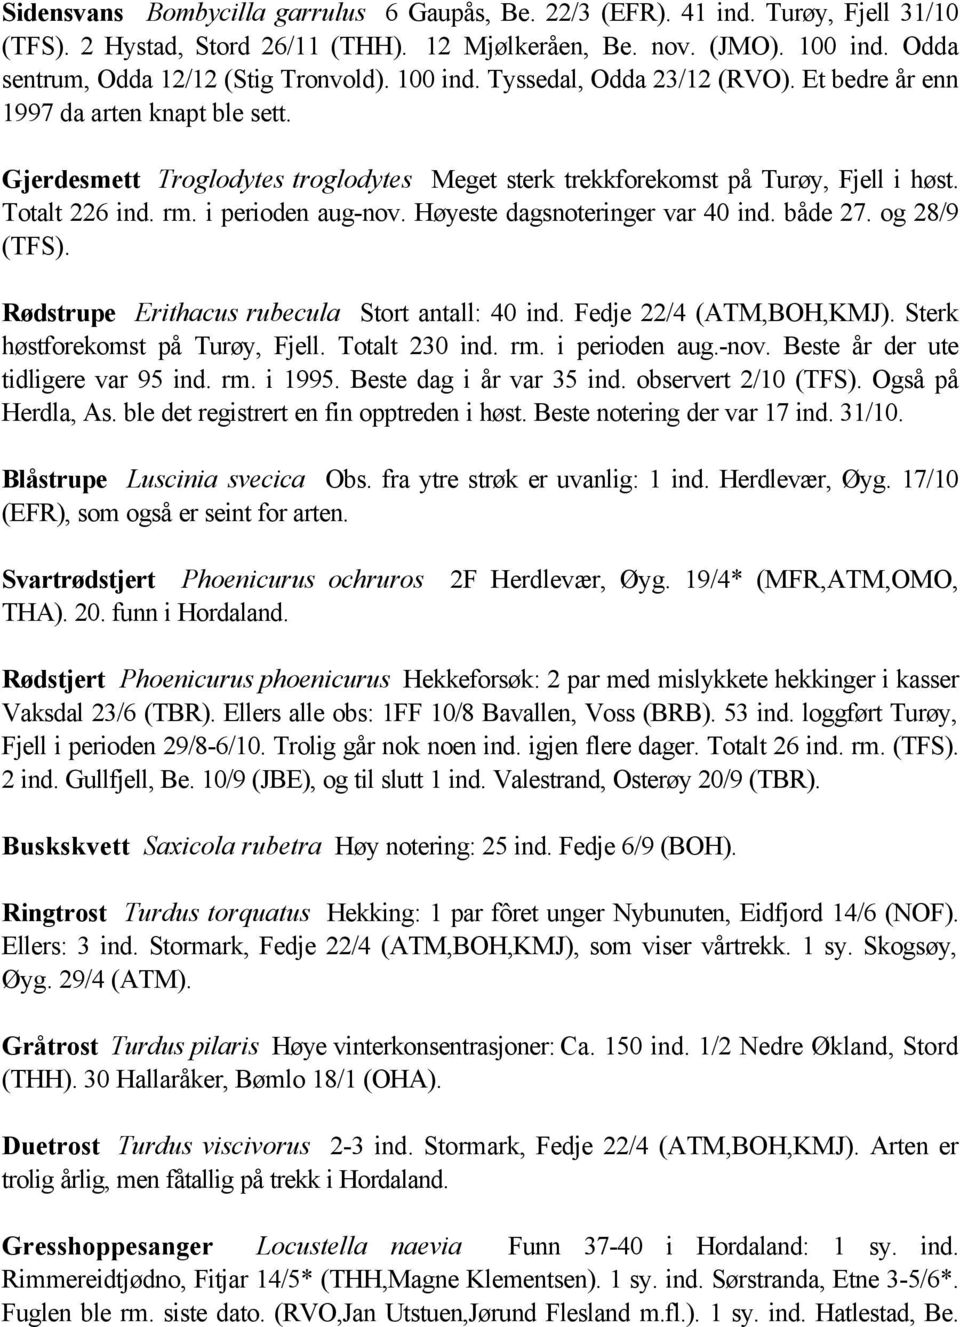 Gjerdesmett Troglodytes troglodytes Meget sterk trekkforekomst på Turøy, Fjell i høst. Totalt 226 ind. rm. i perioden aug-nov. Høyeste dagsnoteringer var 40 ind. både 27. og 28/9 (TFS).